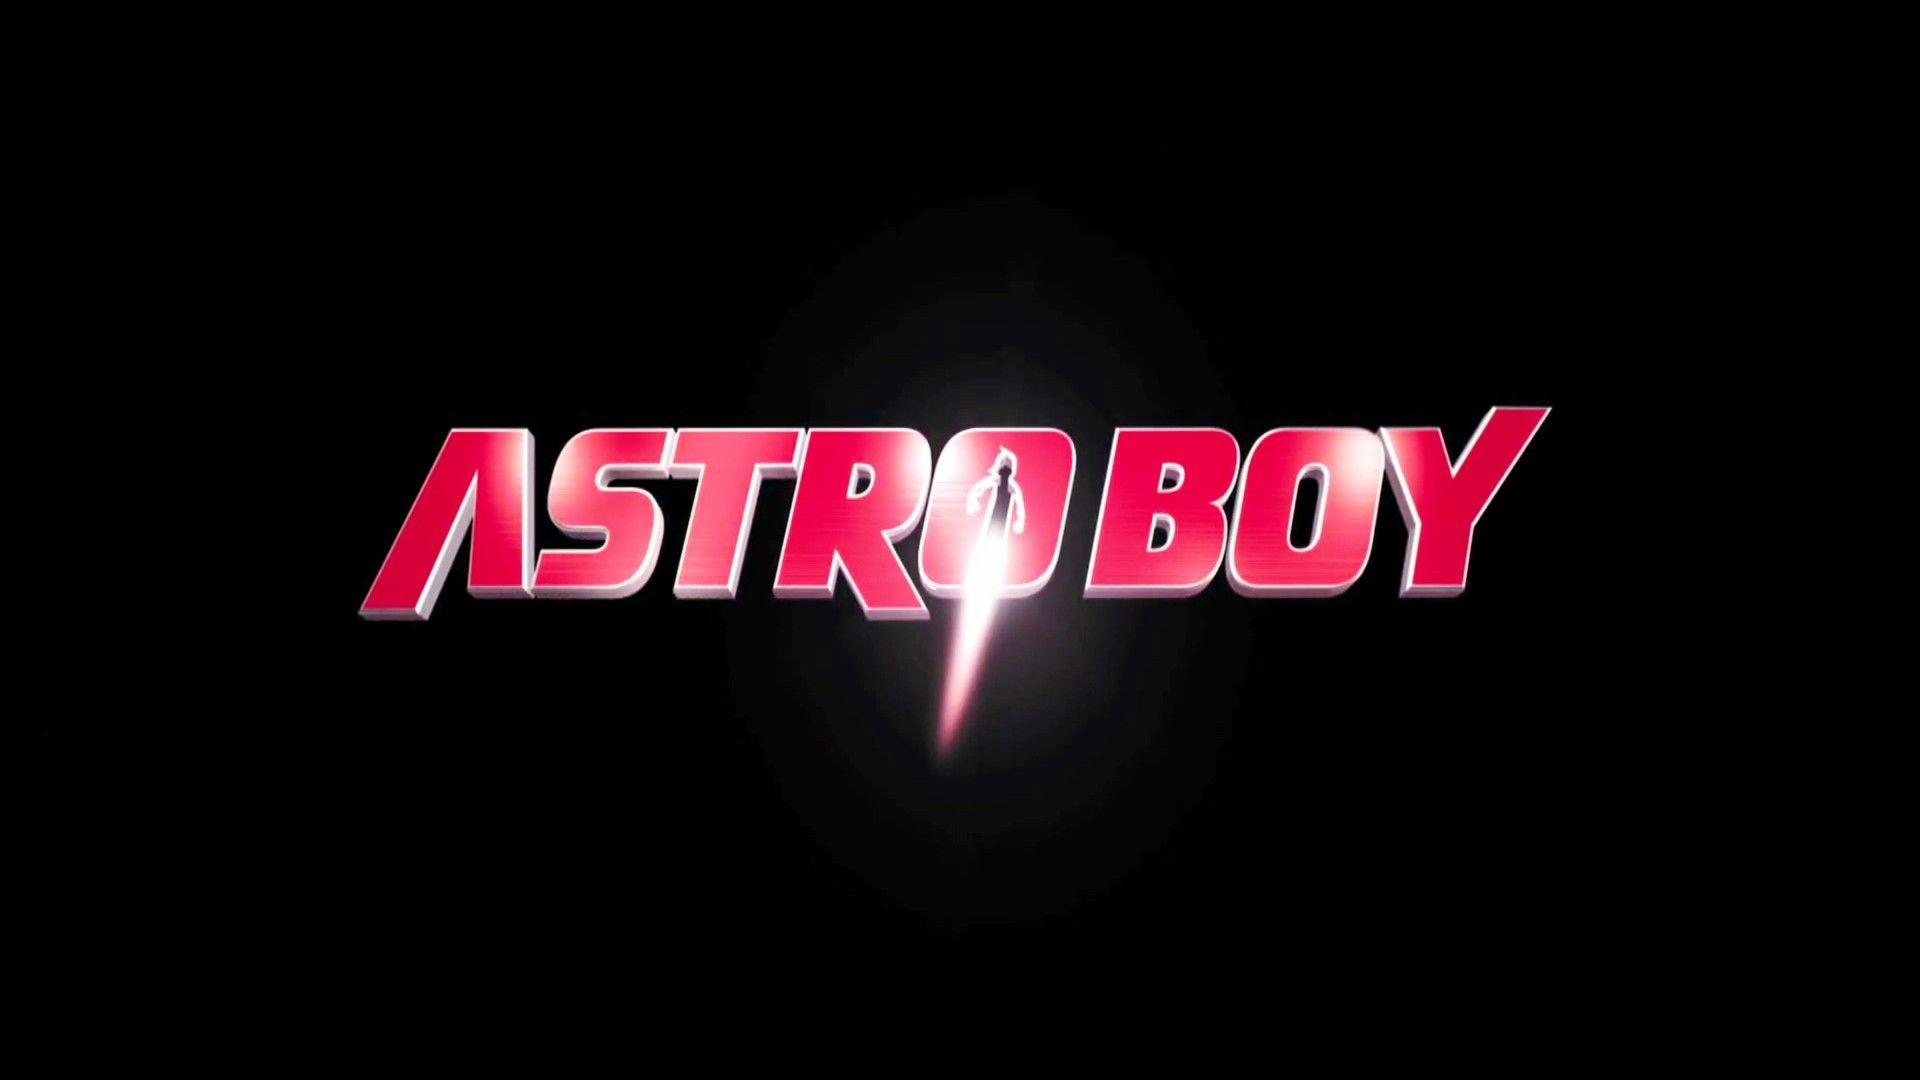 Astro Boy 14210 1920x1080 px